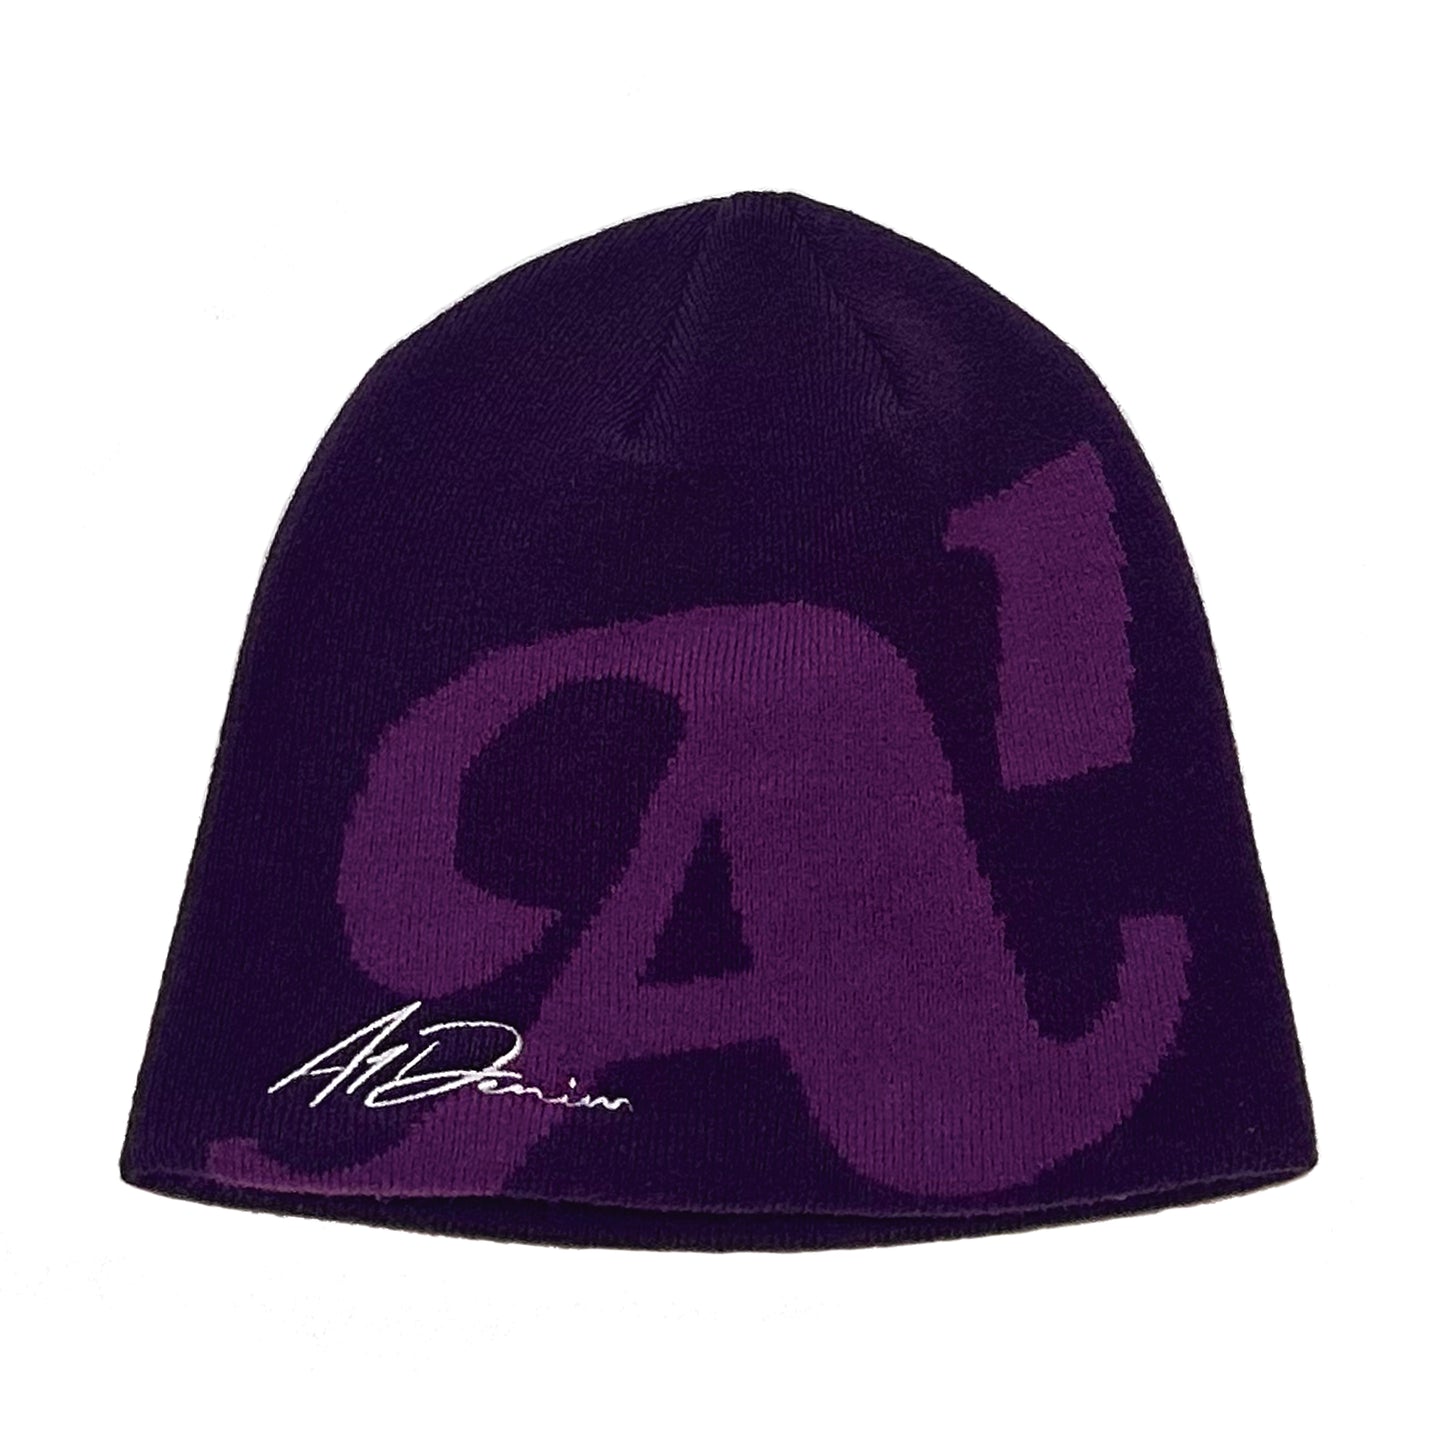 A1 Beanie - Purple